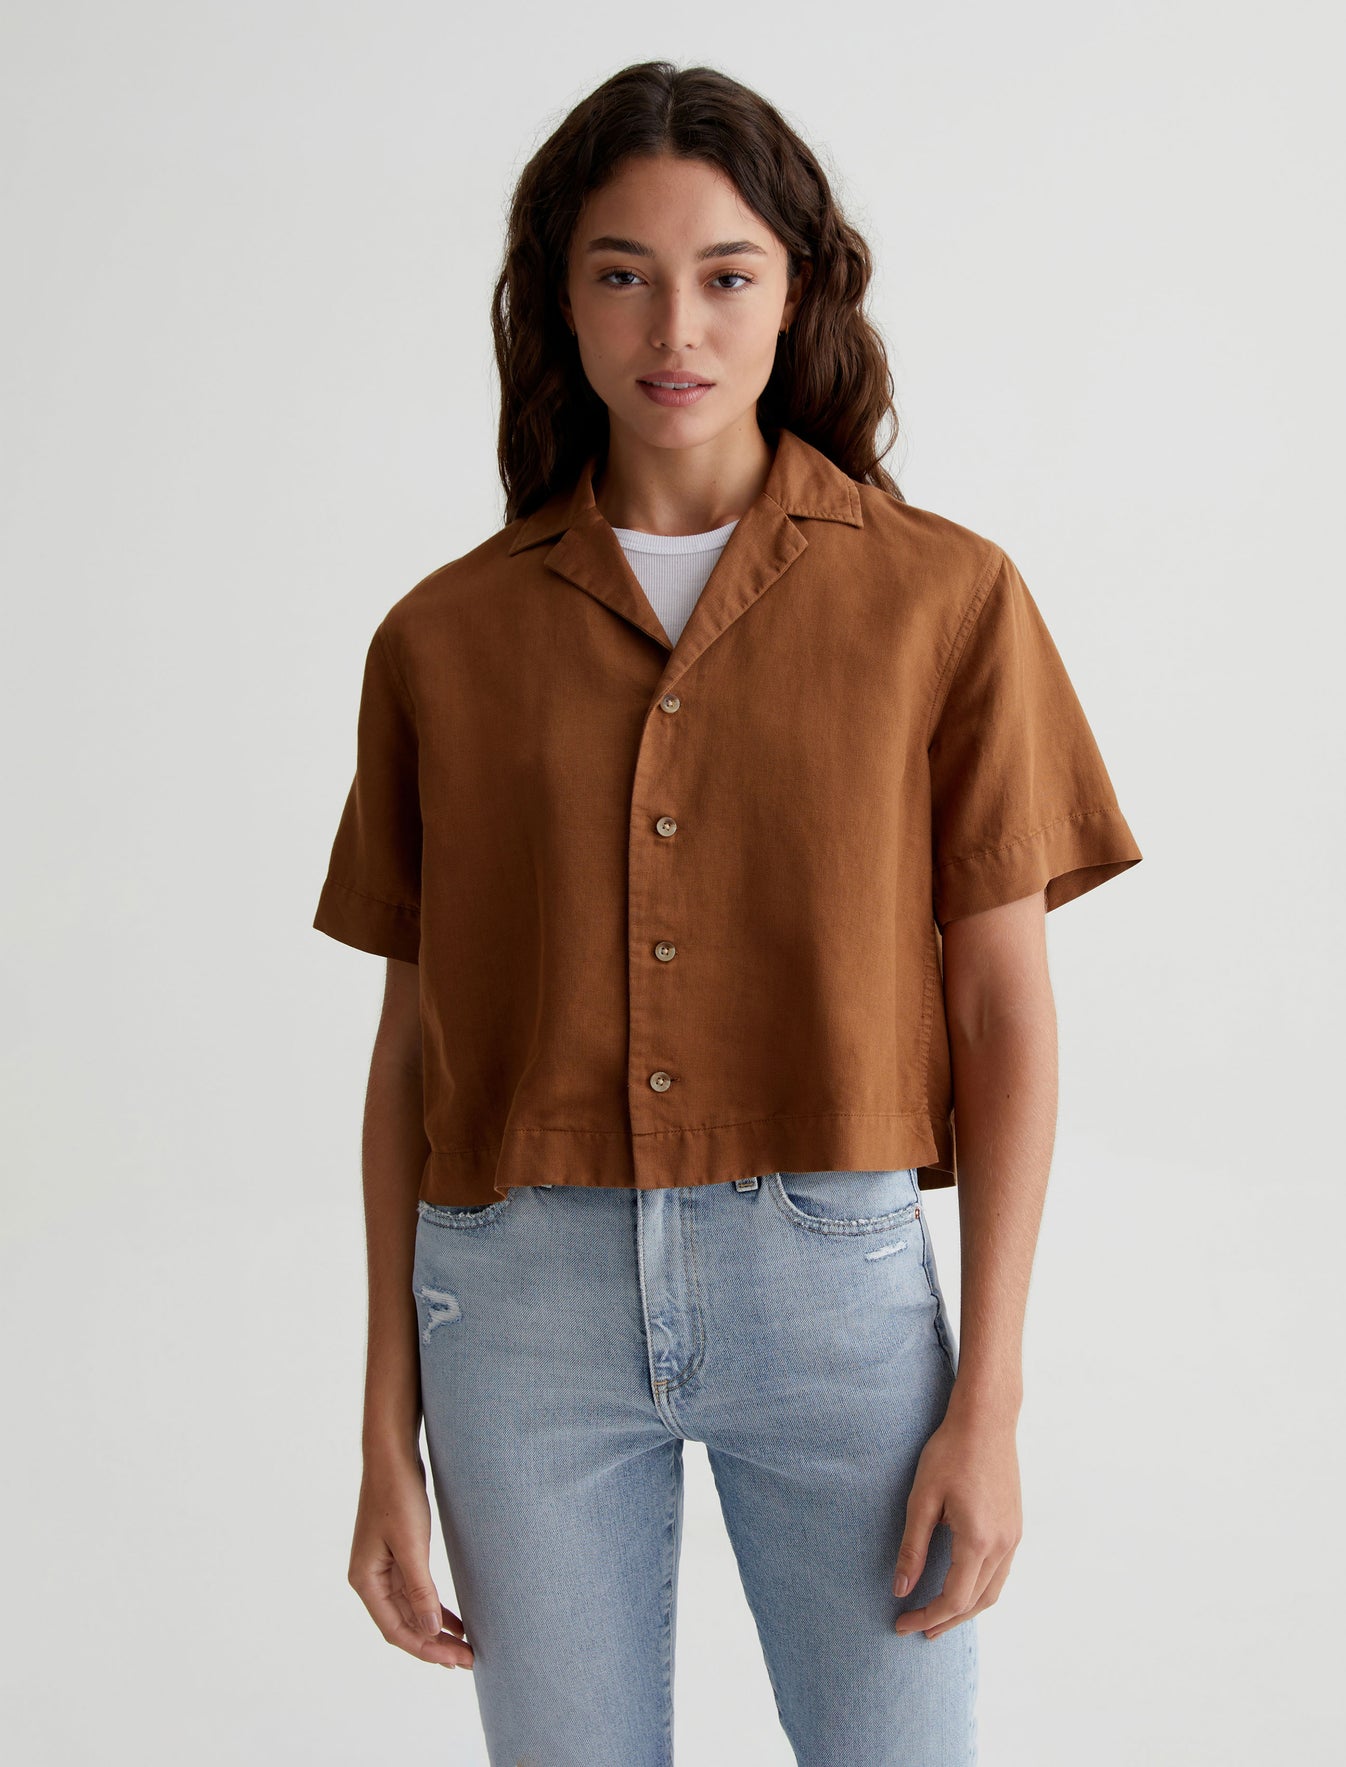 Koa|Relaxed Fit Button Up Shirt